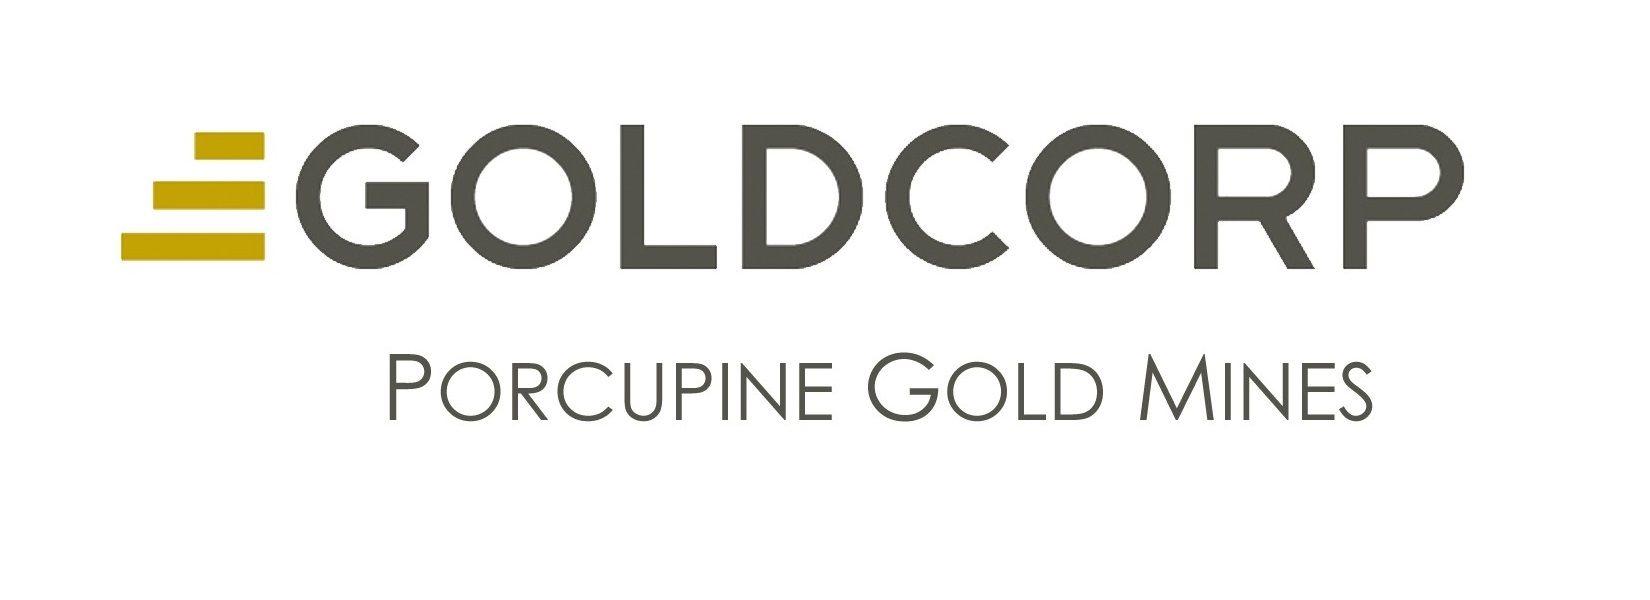 Goldcorp Logo - Goldcorp logo 99.3 Timmins